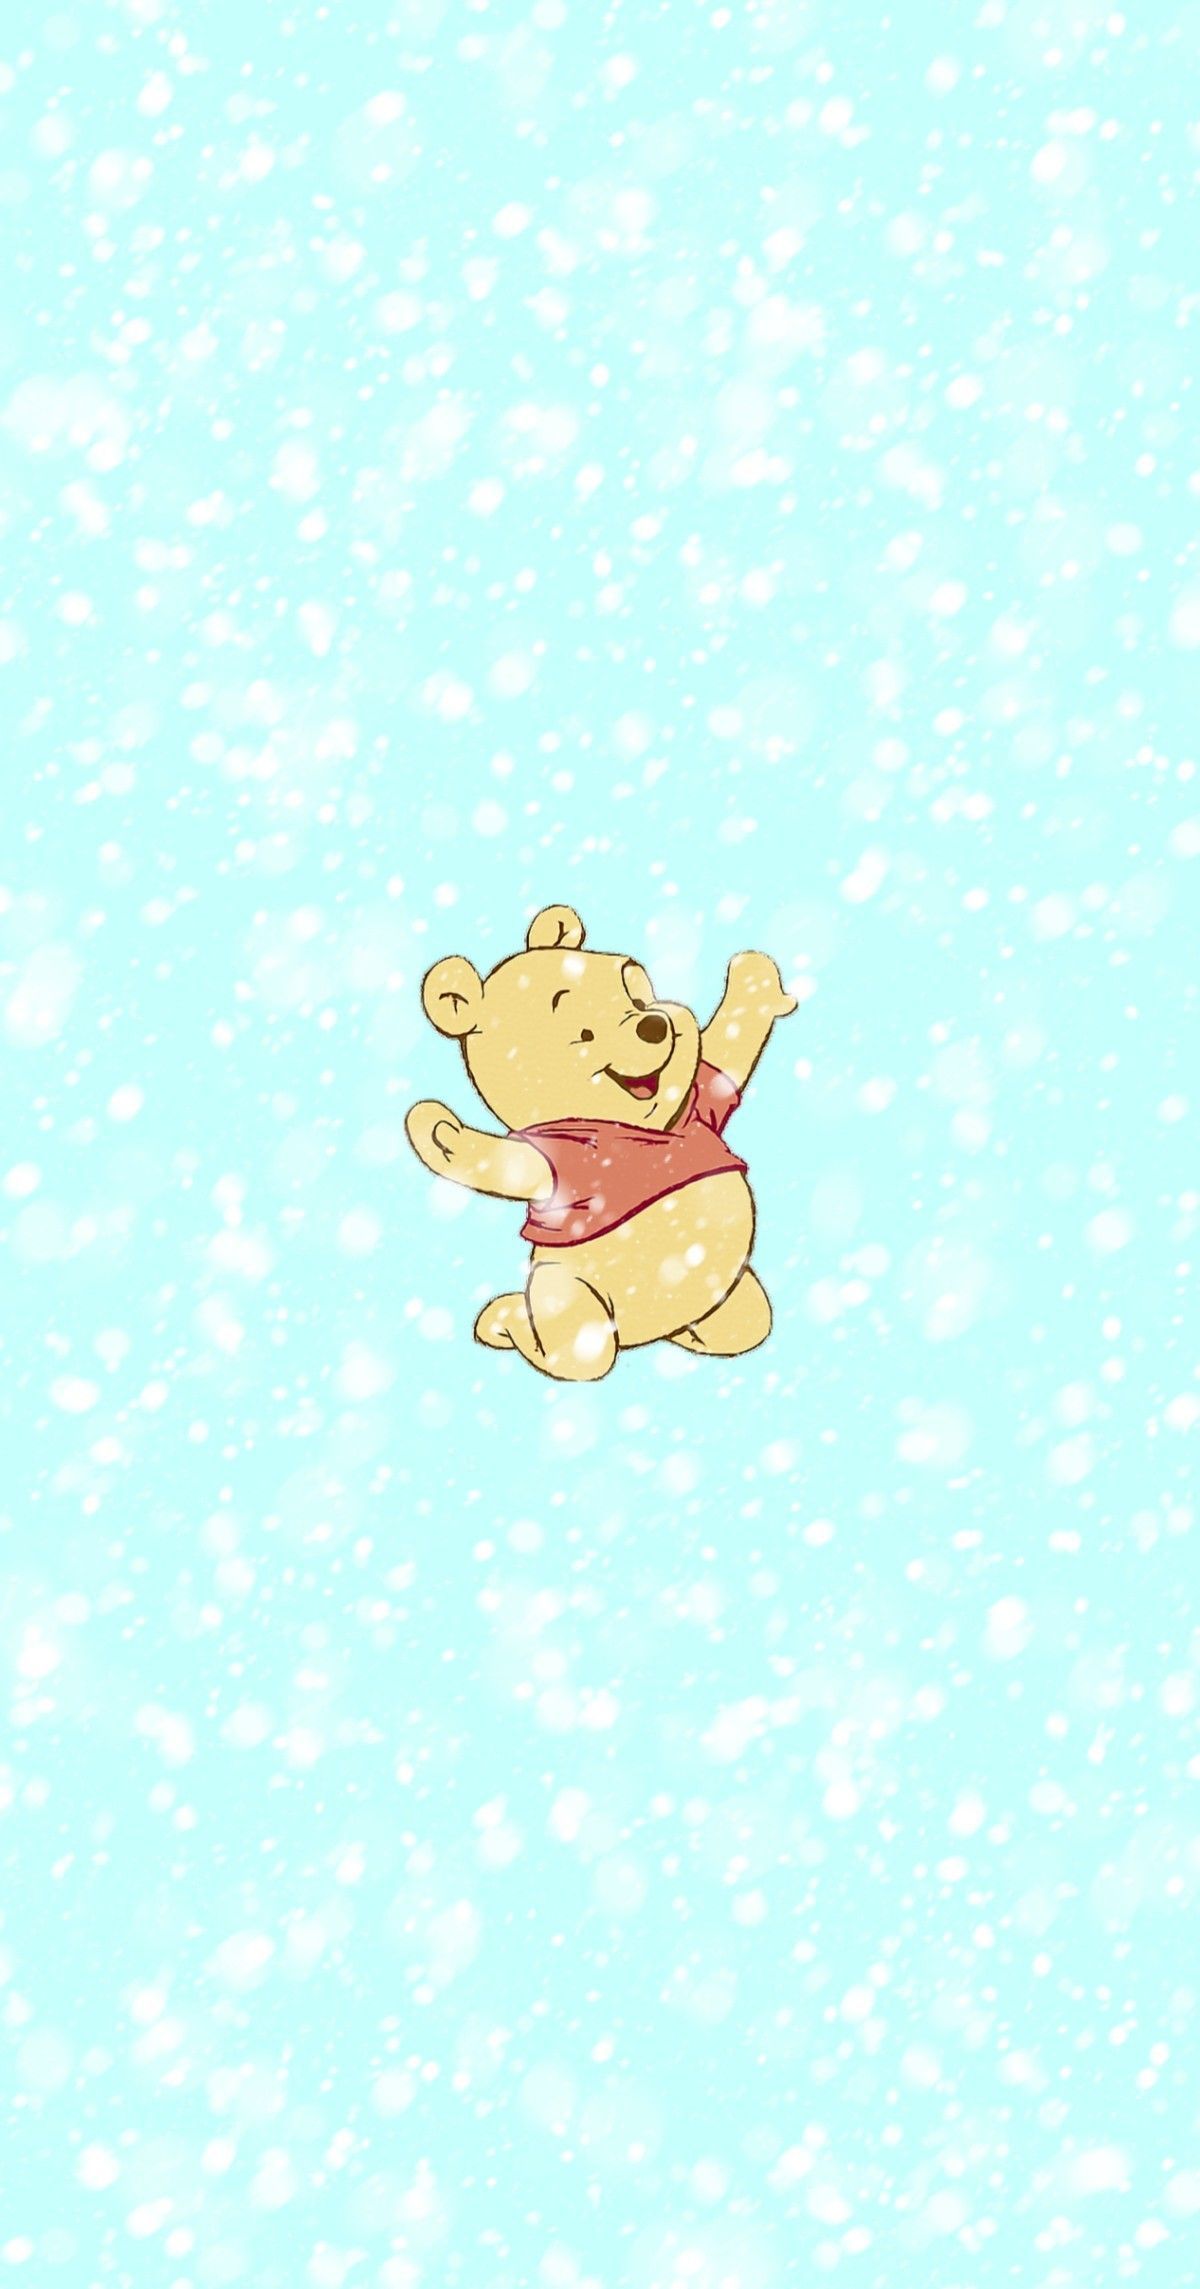 Winnie the Pooh wallpaper - Winnie the Pooh